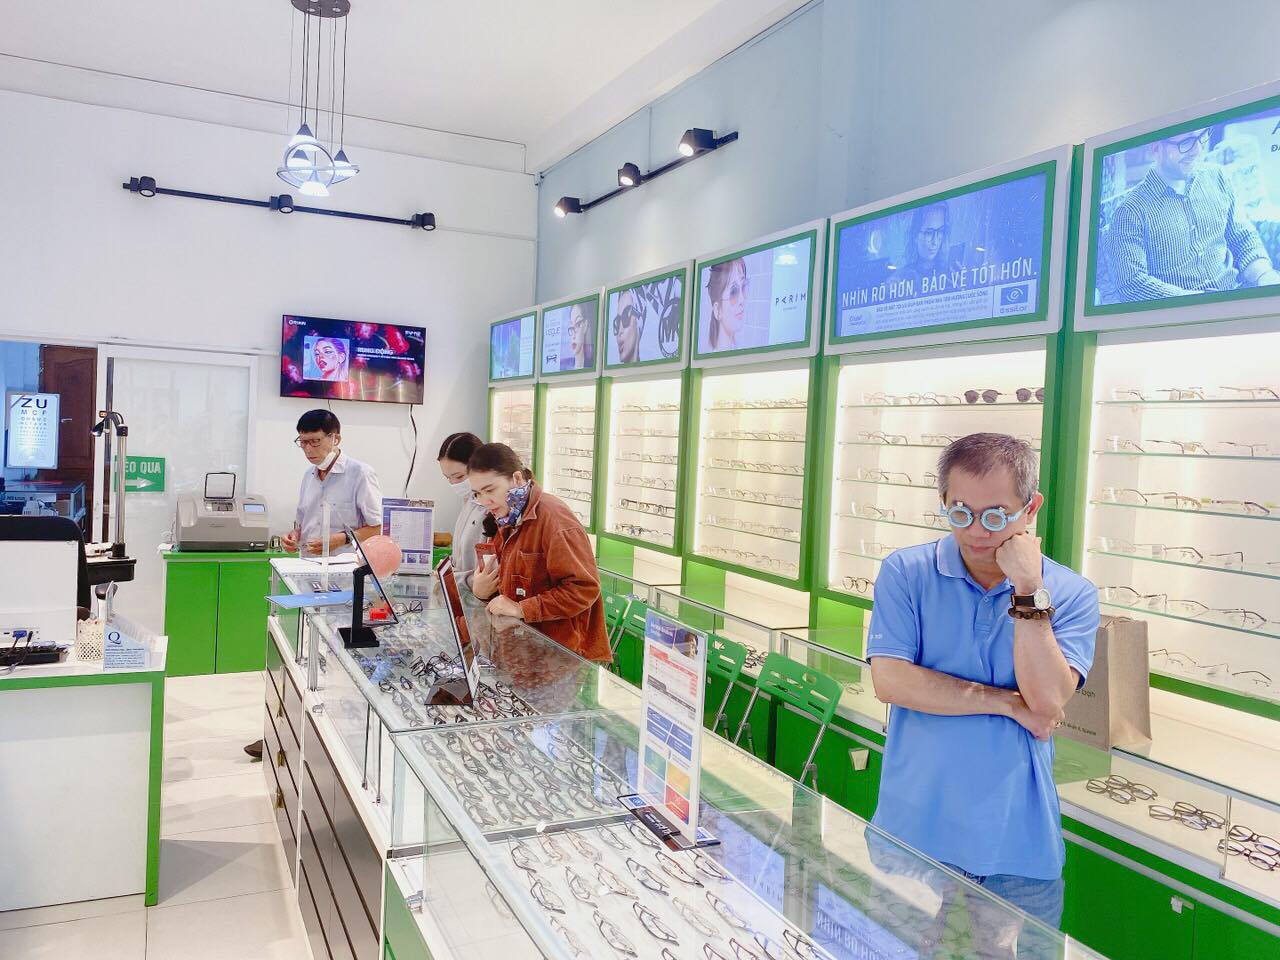 Cảm nhận của khách hàng về cửa hàng mắt kính Butitan